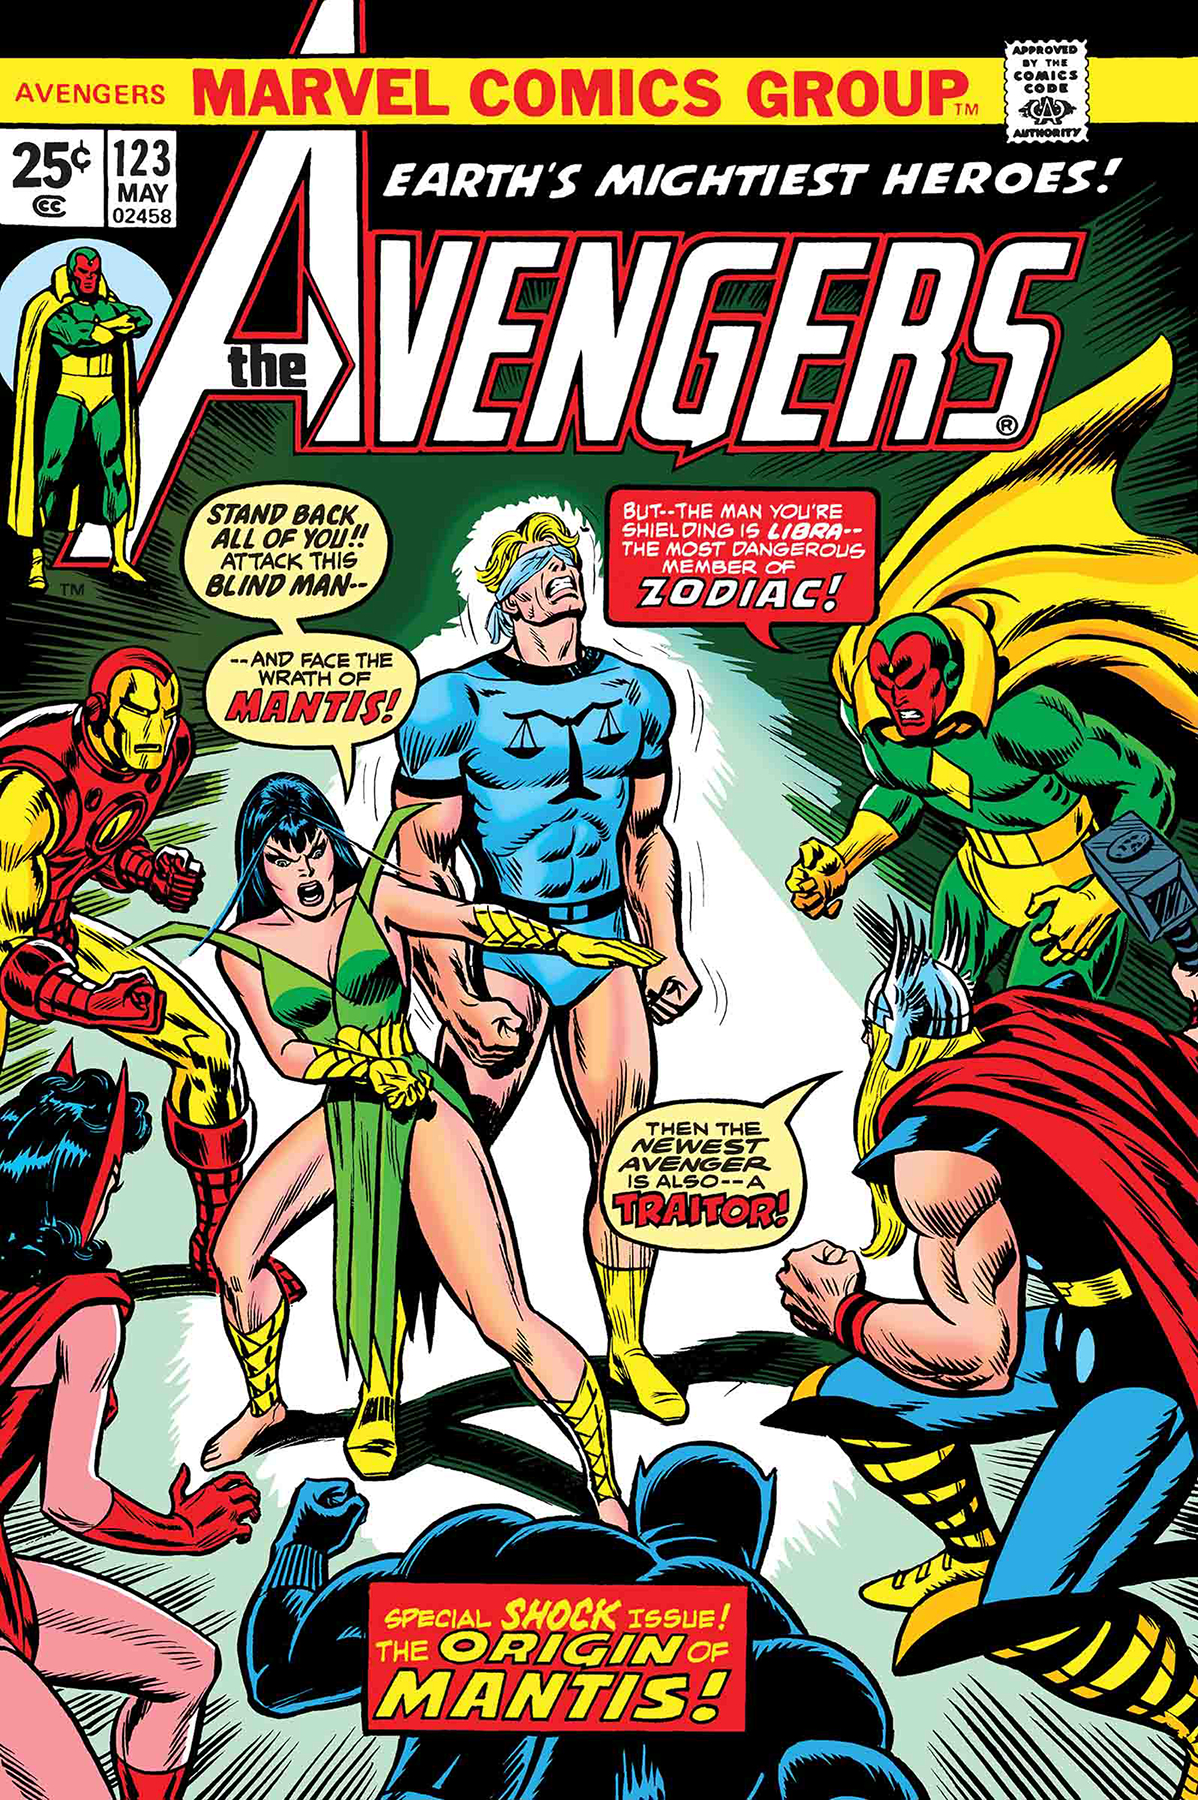 True Believers Avengers: Origins of Mantis no. 1 (2019)